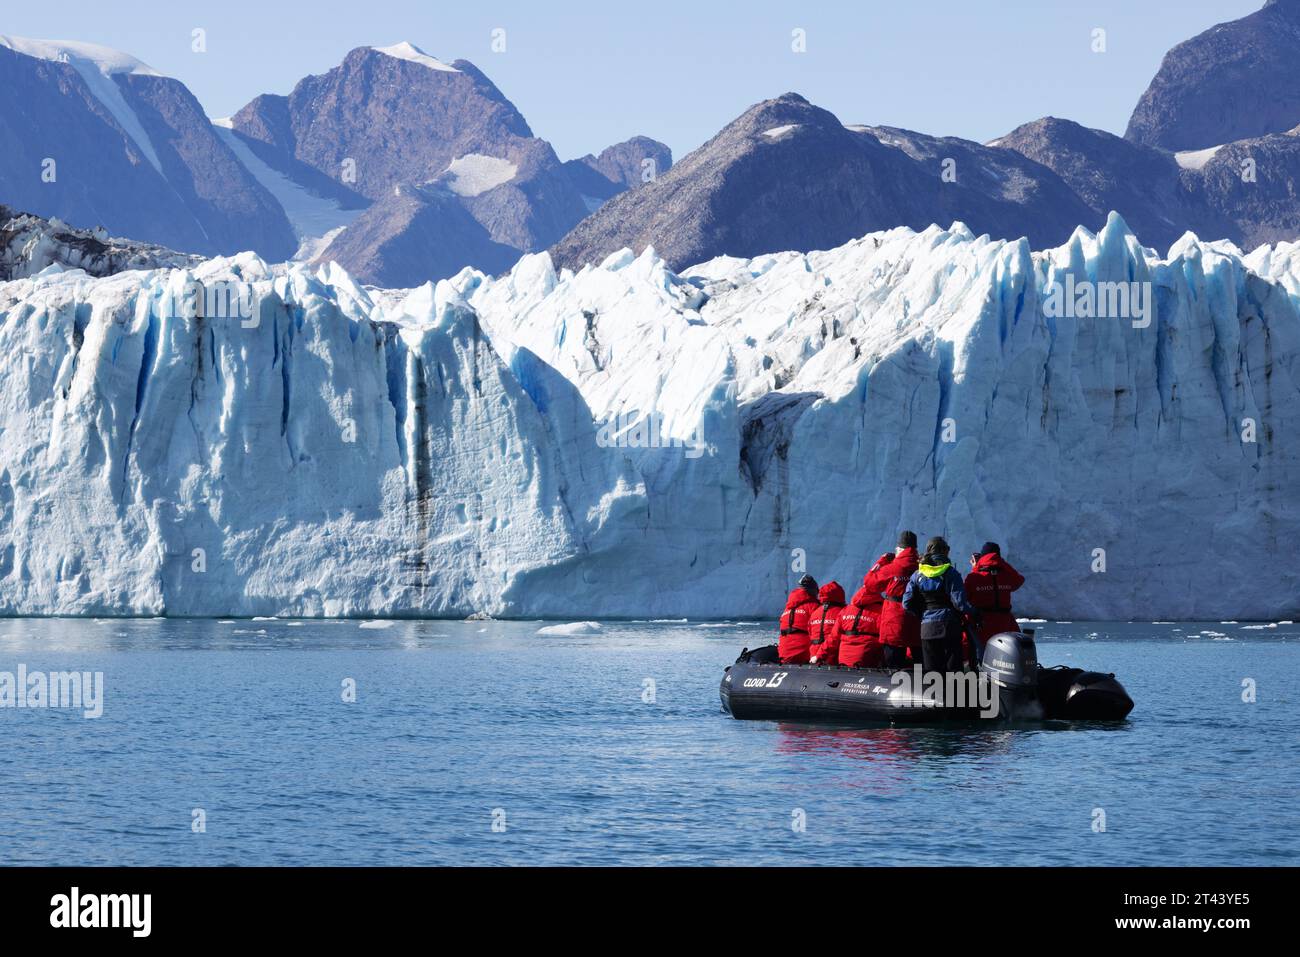 Grönlandgletscher - Menschen in einem Schlauchboot mit Tierkreiszeichen, die einen Blick auf den Thrym-Gletscher, den Skjoldungen-Fjord, Ostgrönland aus nächster Nähe haben. Polarbewegung. Stockfoto